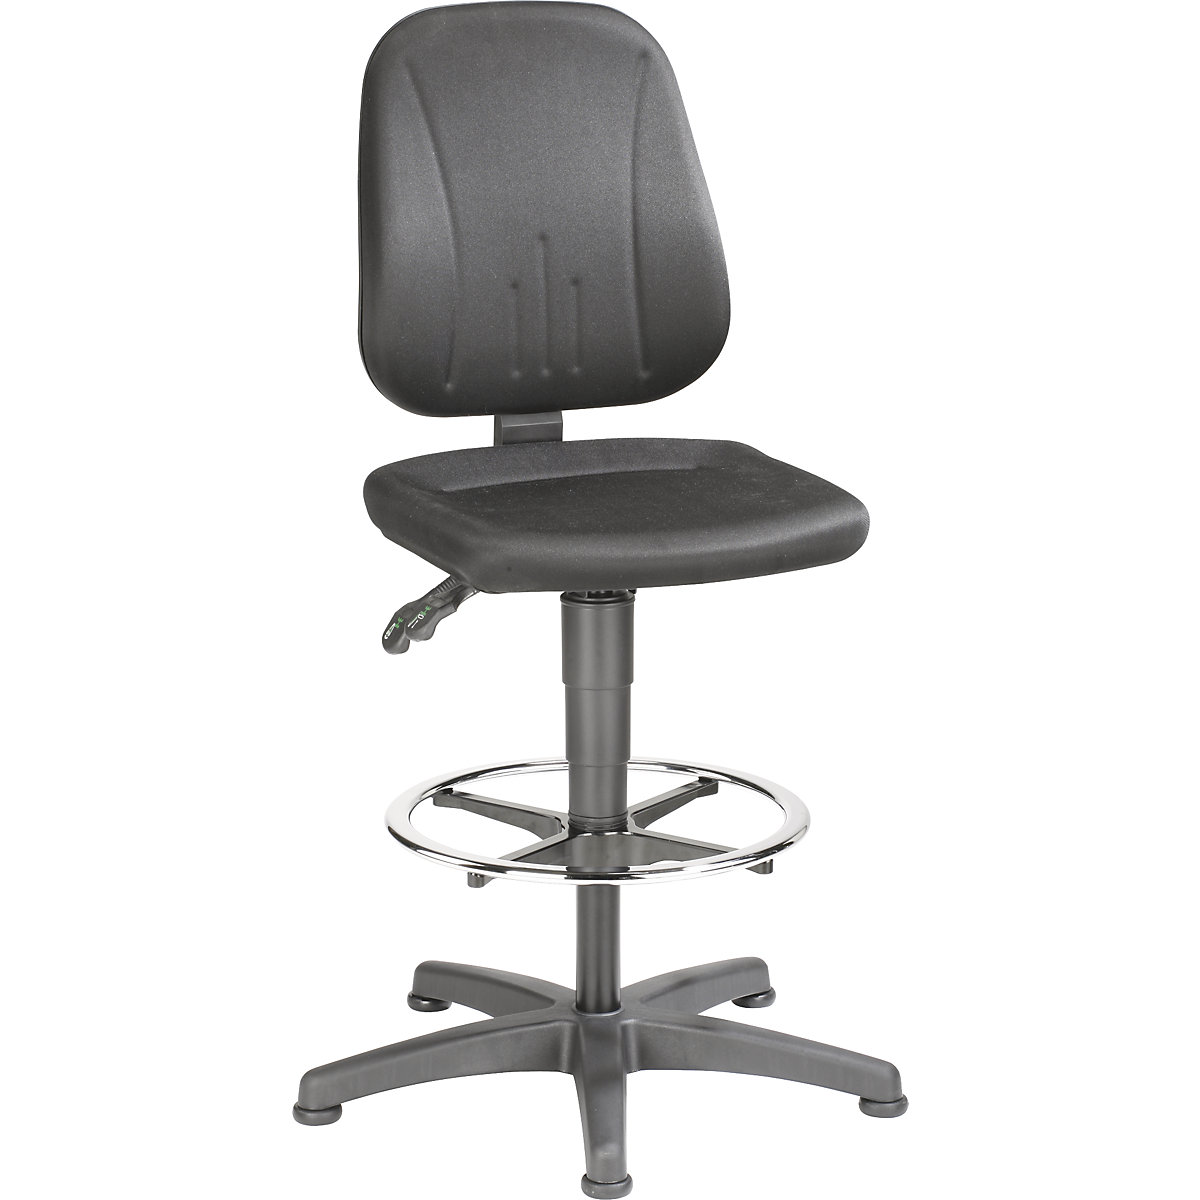 Okretni radni stolac – bimos, s namještanjem visine pomoću plinske opruge, presvlaka od tkanine, u crnoj boji, s podnim vodilicama i nožnim obručem-8